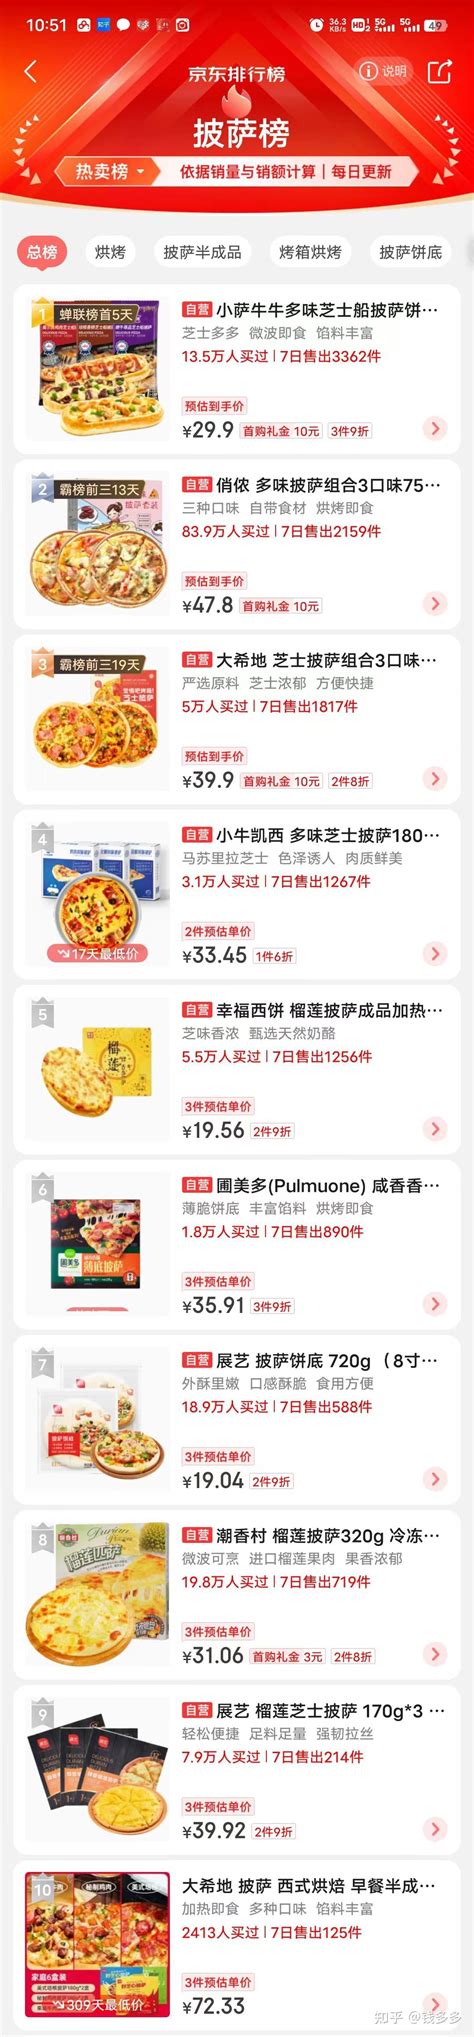 2022披萨锅十大品牌排行榜-披萨锅哪个牌子好-排行榜123网